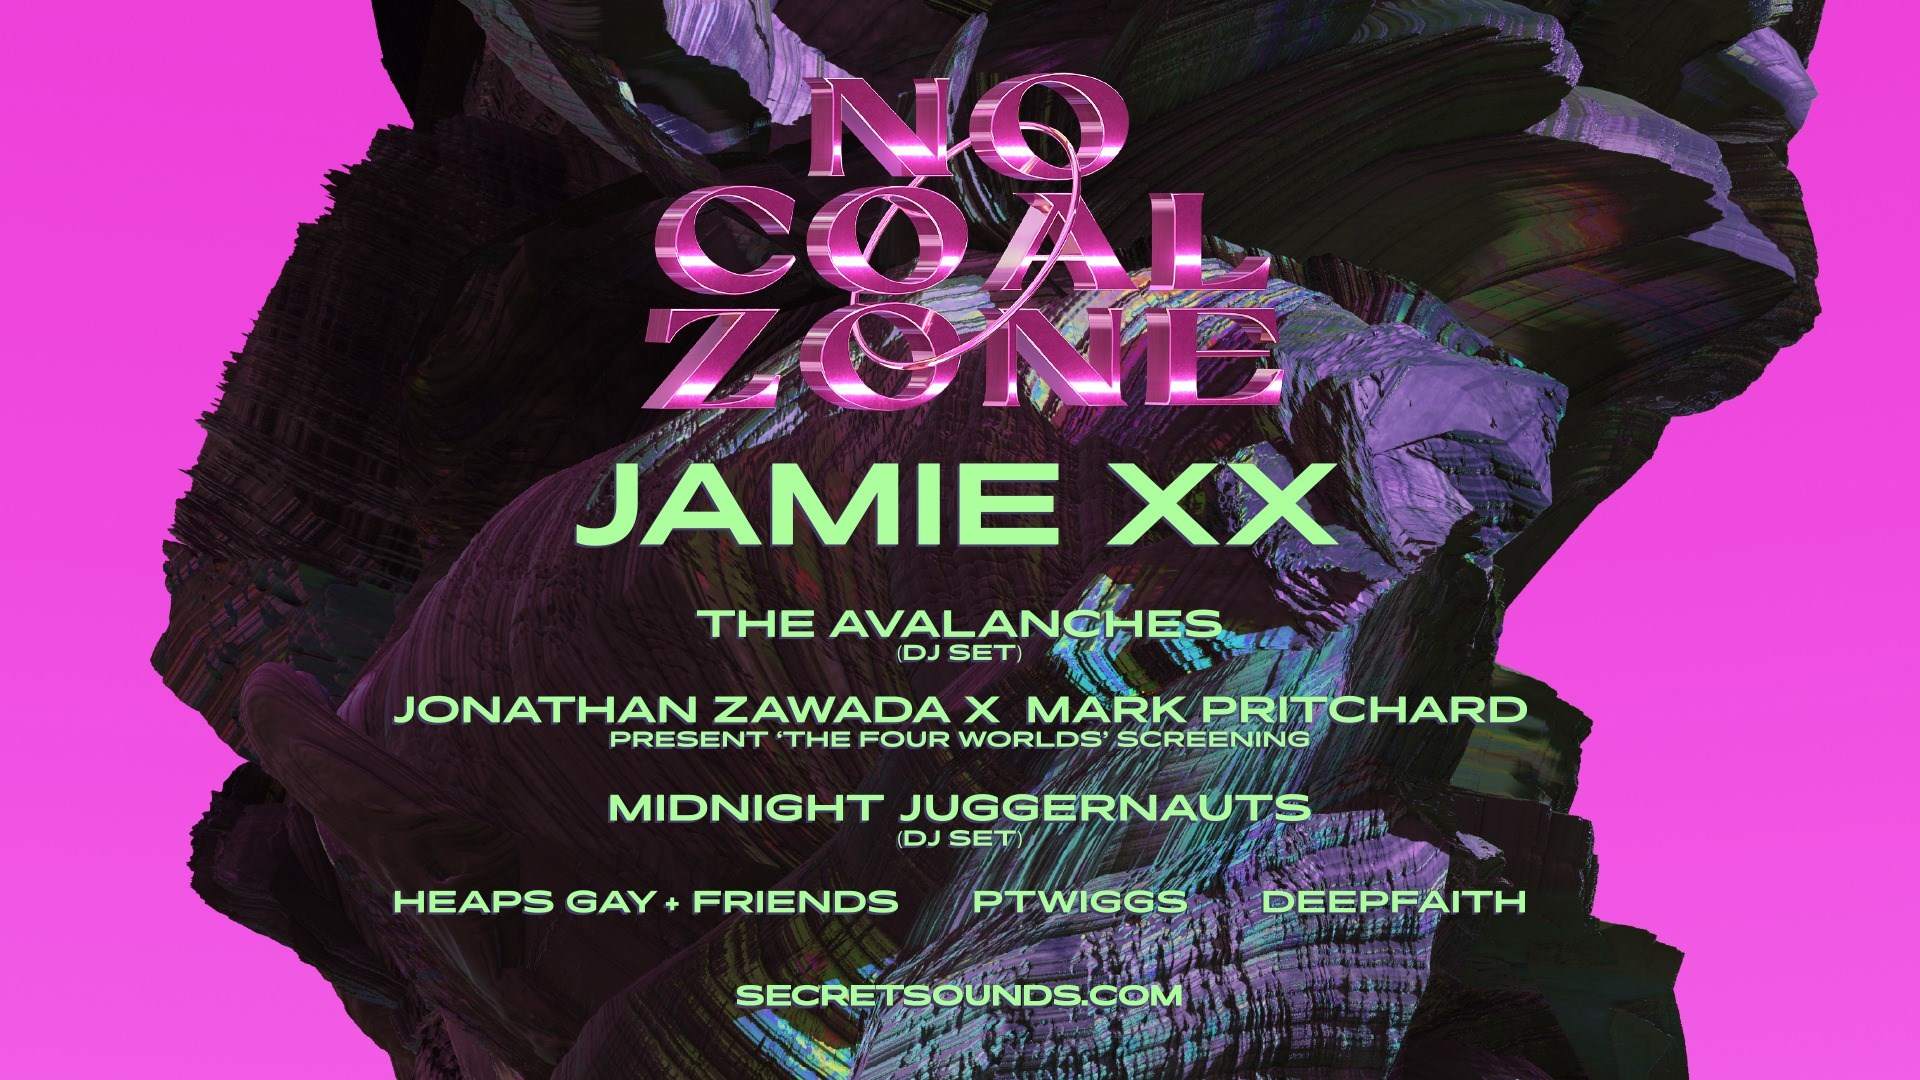 Jamie xx - No Coal Zone - フライヤー表